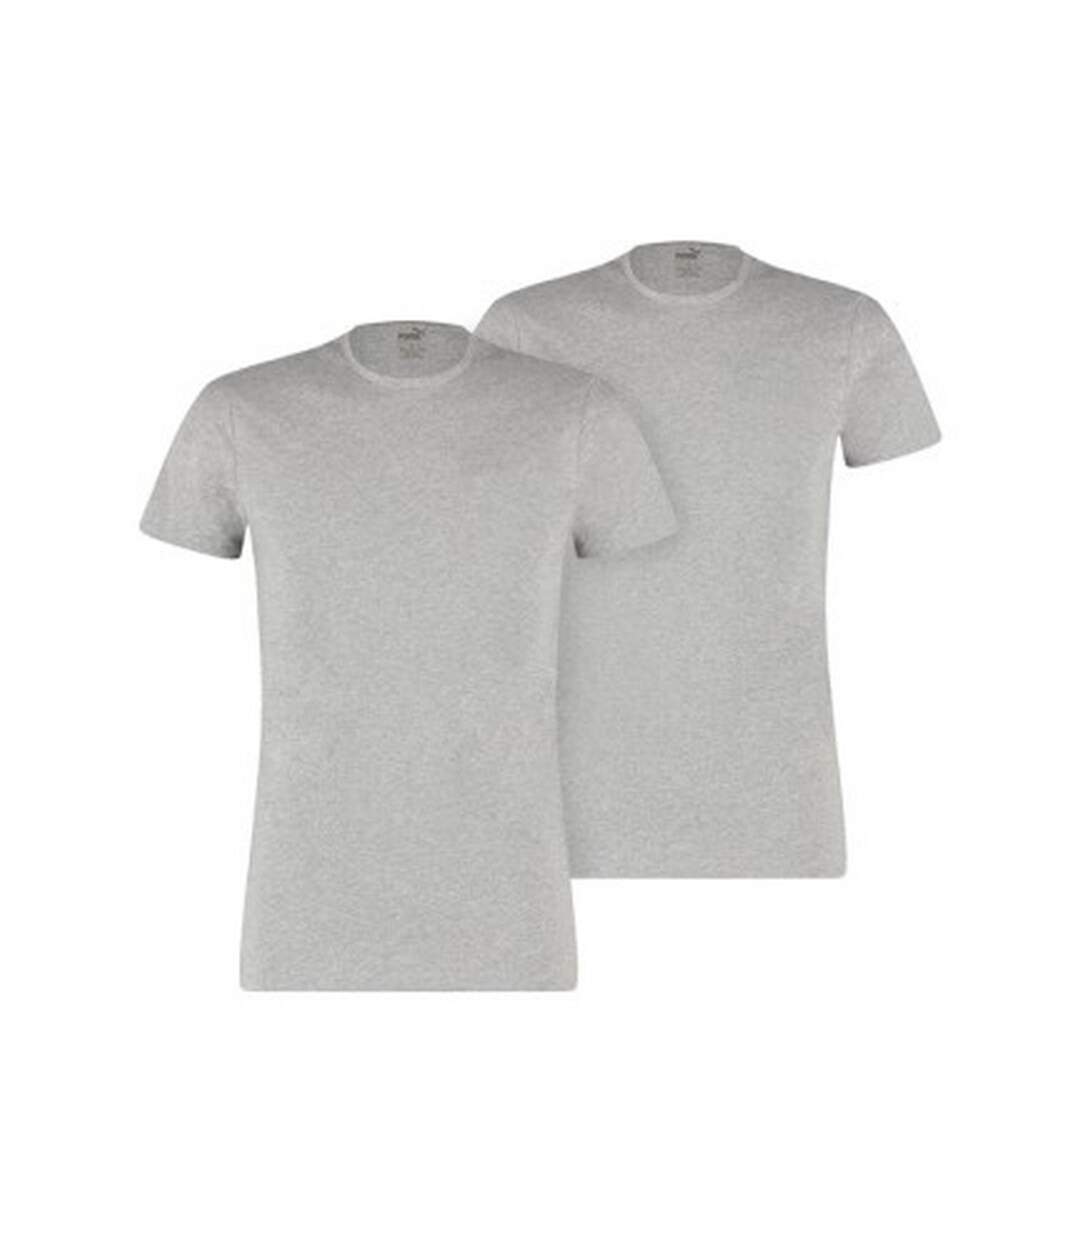 Puma T-shirt unisexe pour adultes (lot de 2) (Gris Chiné) - UTCS739